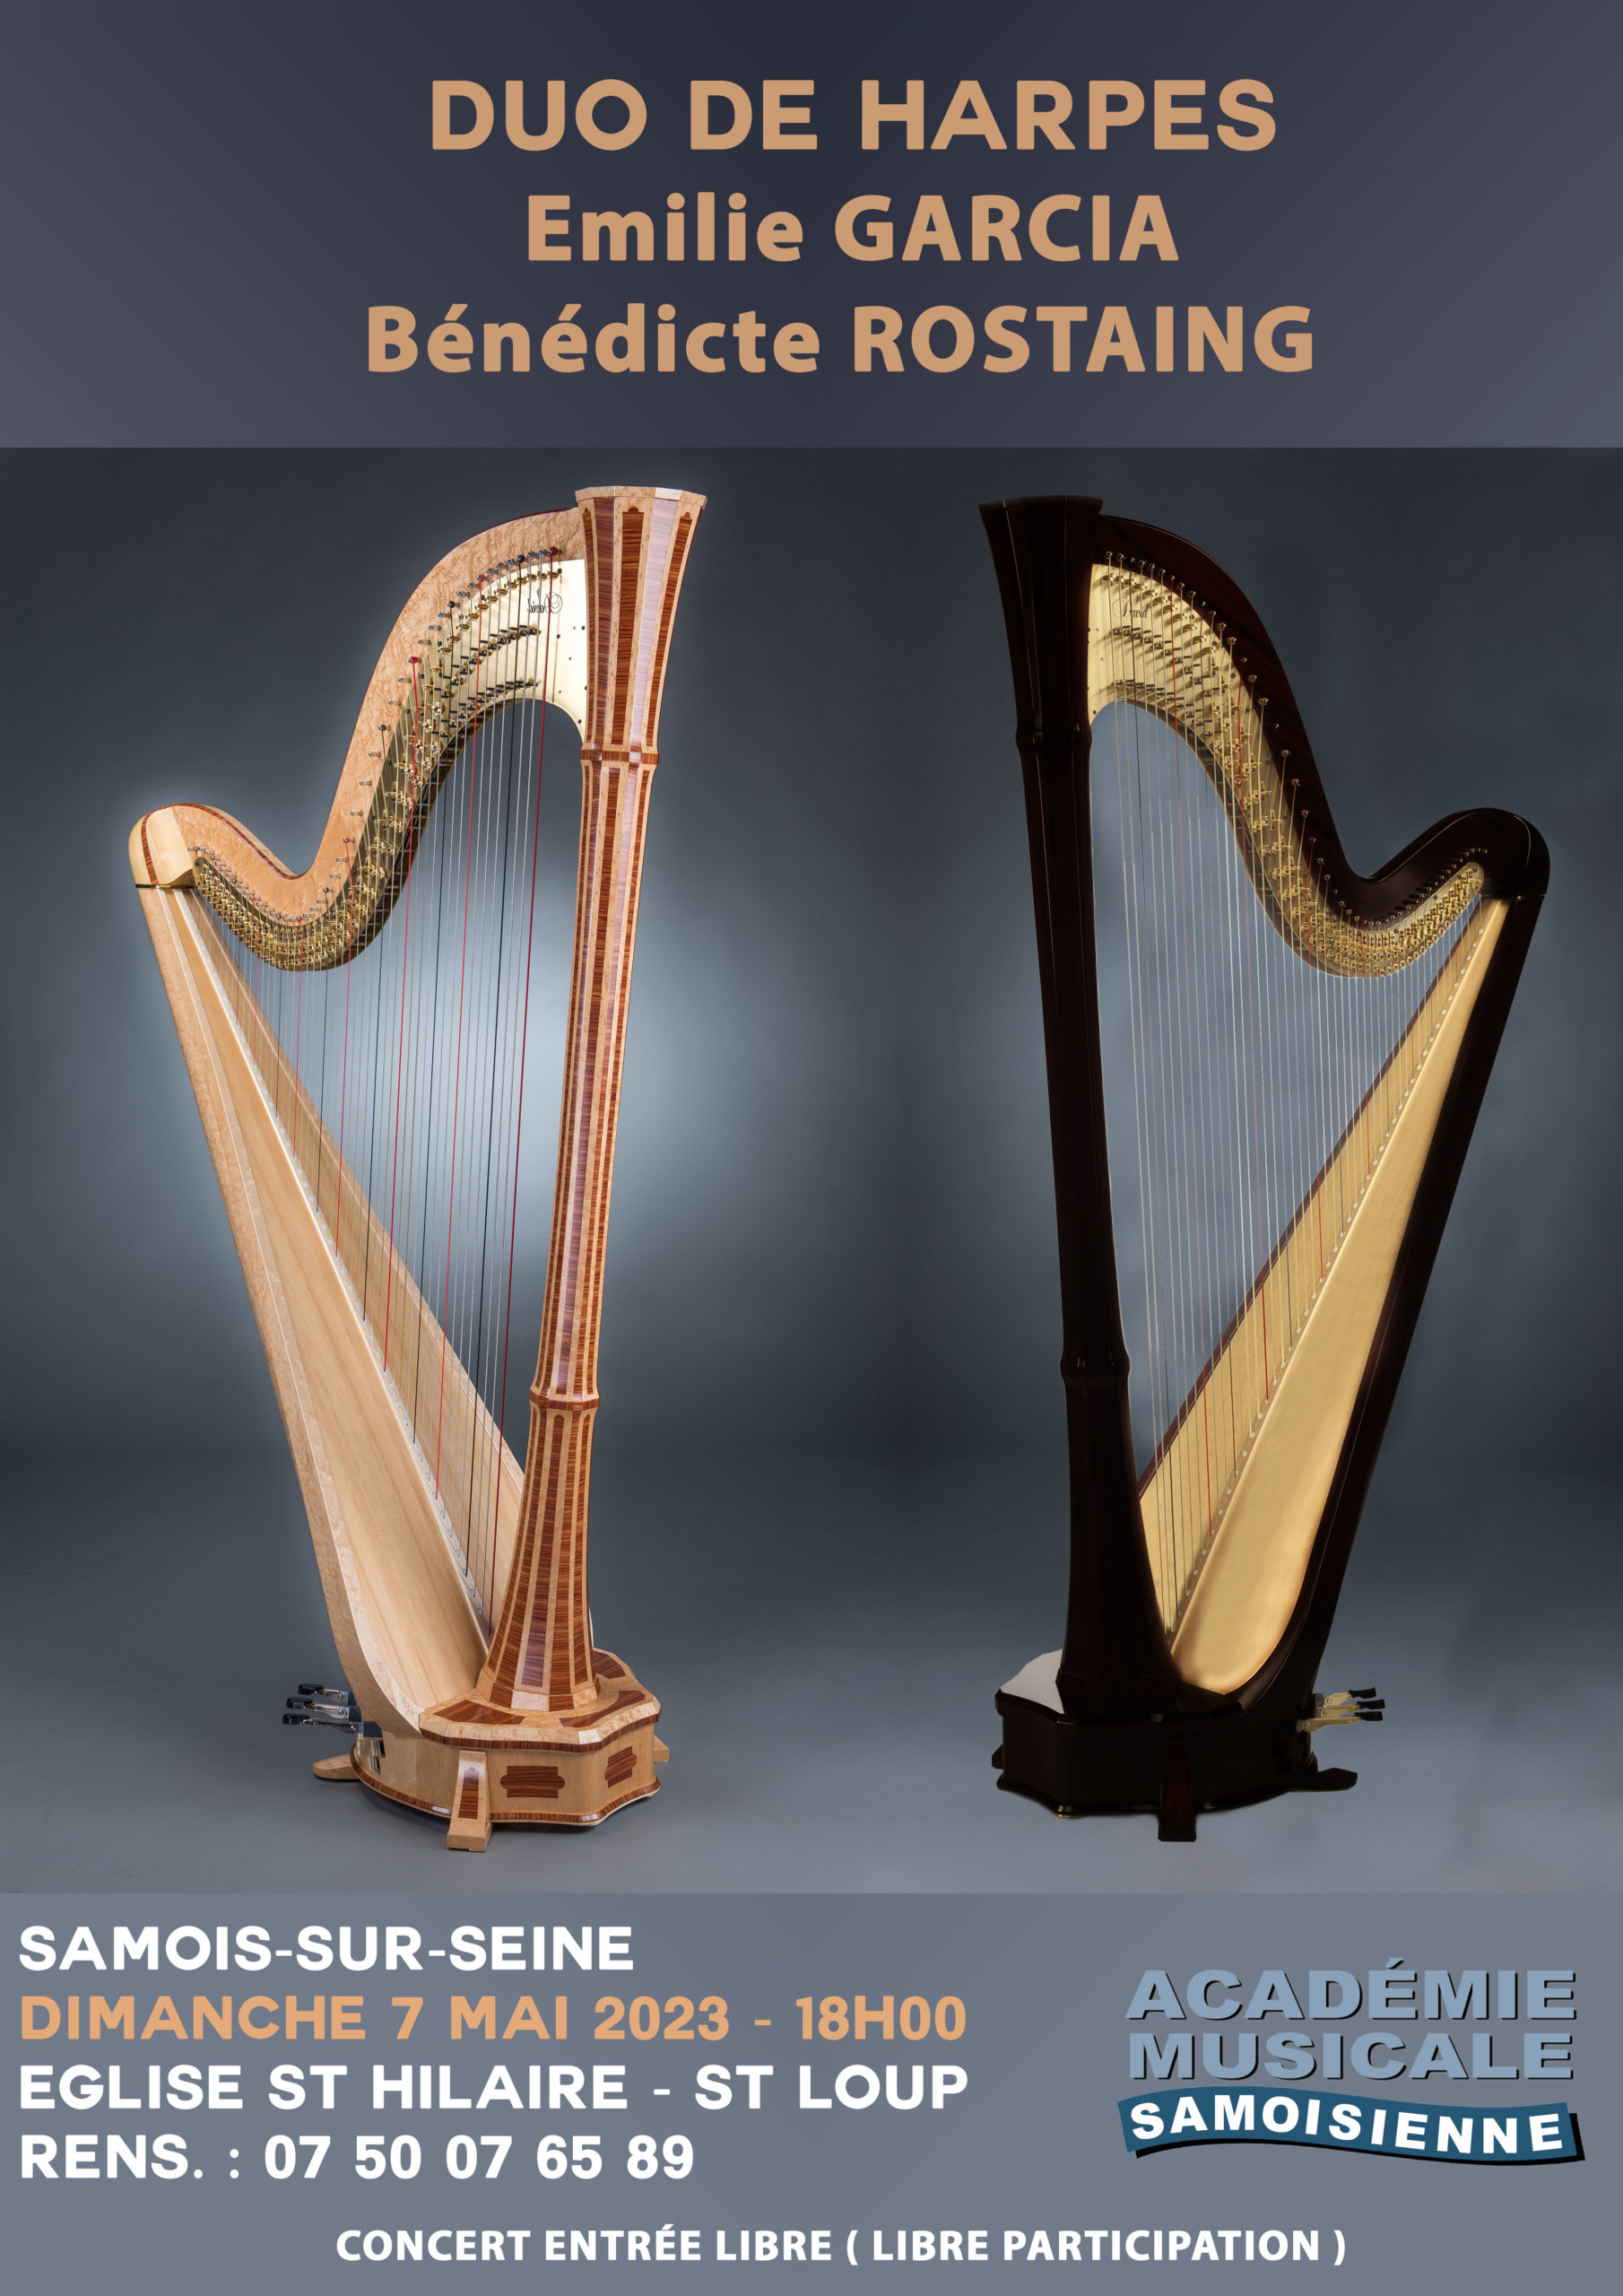 Concert duo de harpes samois-sur-seine